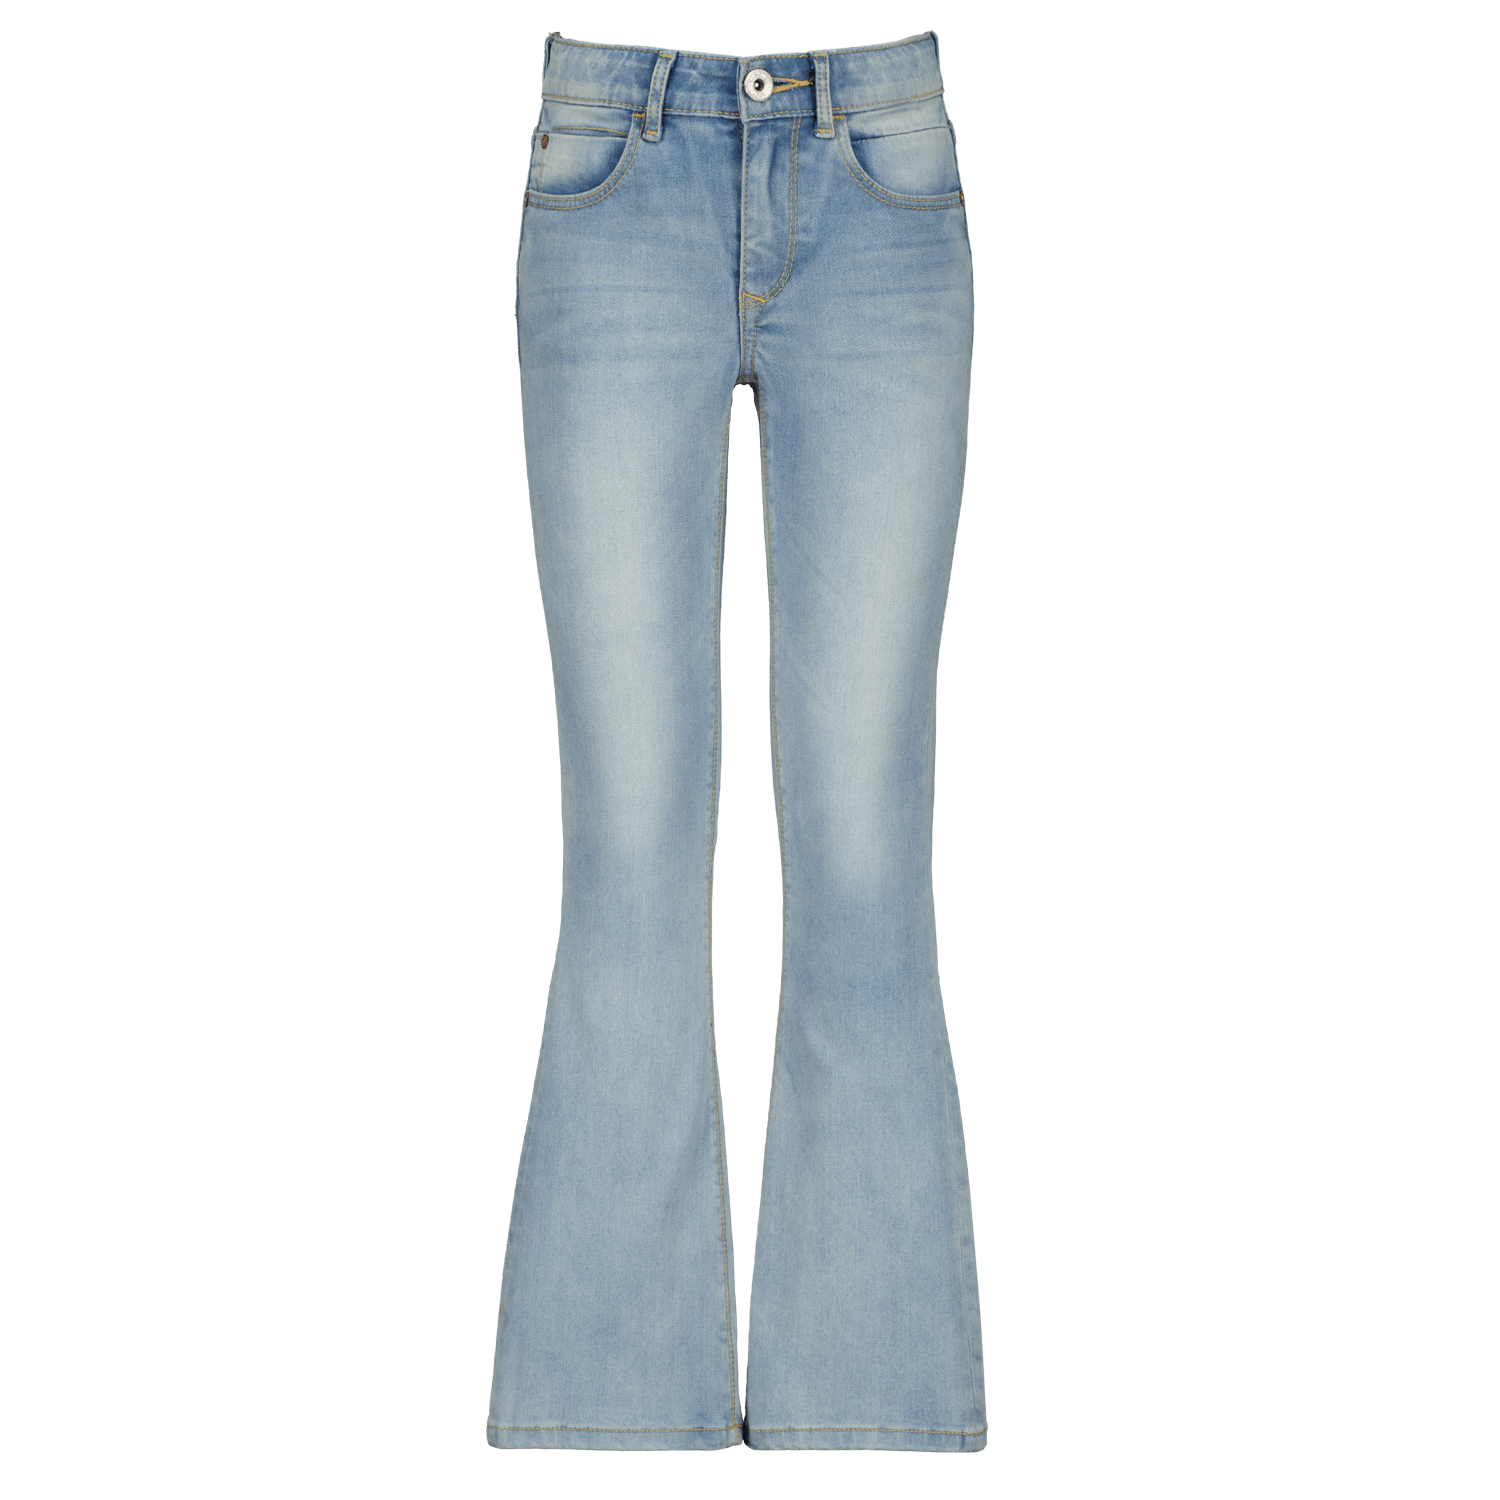 VINGINO flared jeans Abbey light vintage Blauw Meisjes Stretchdenim Effen 140